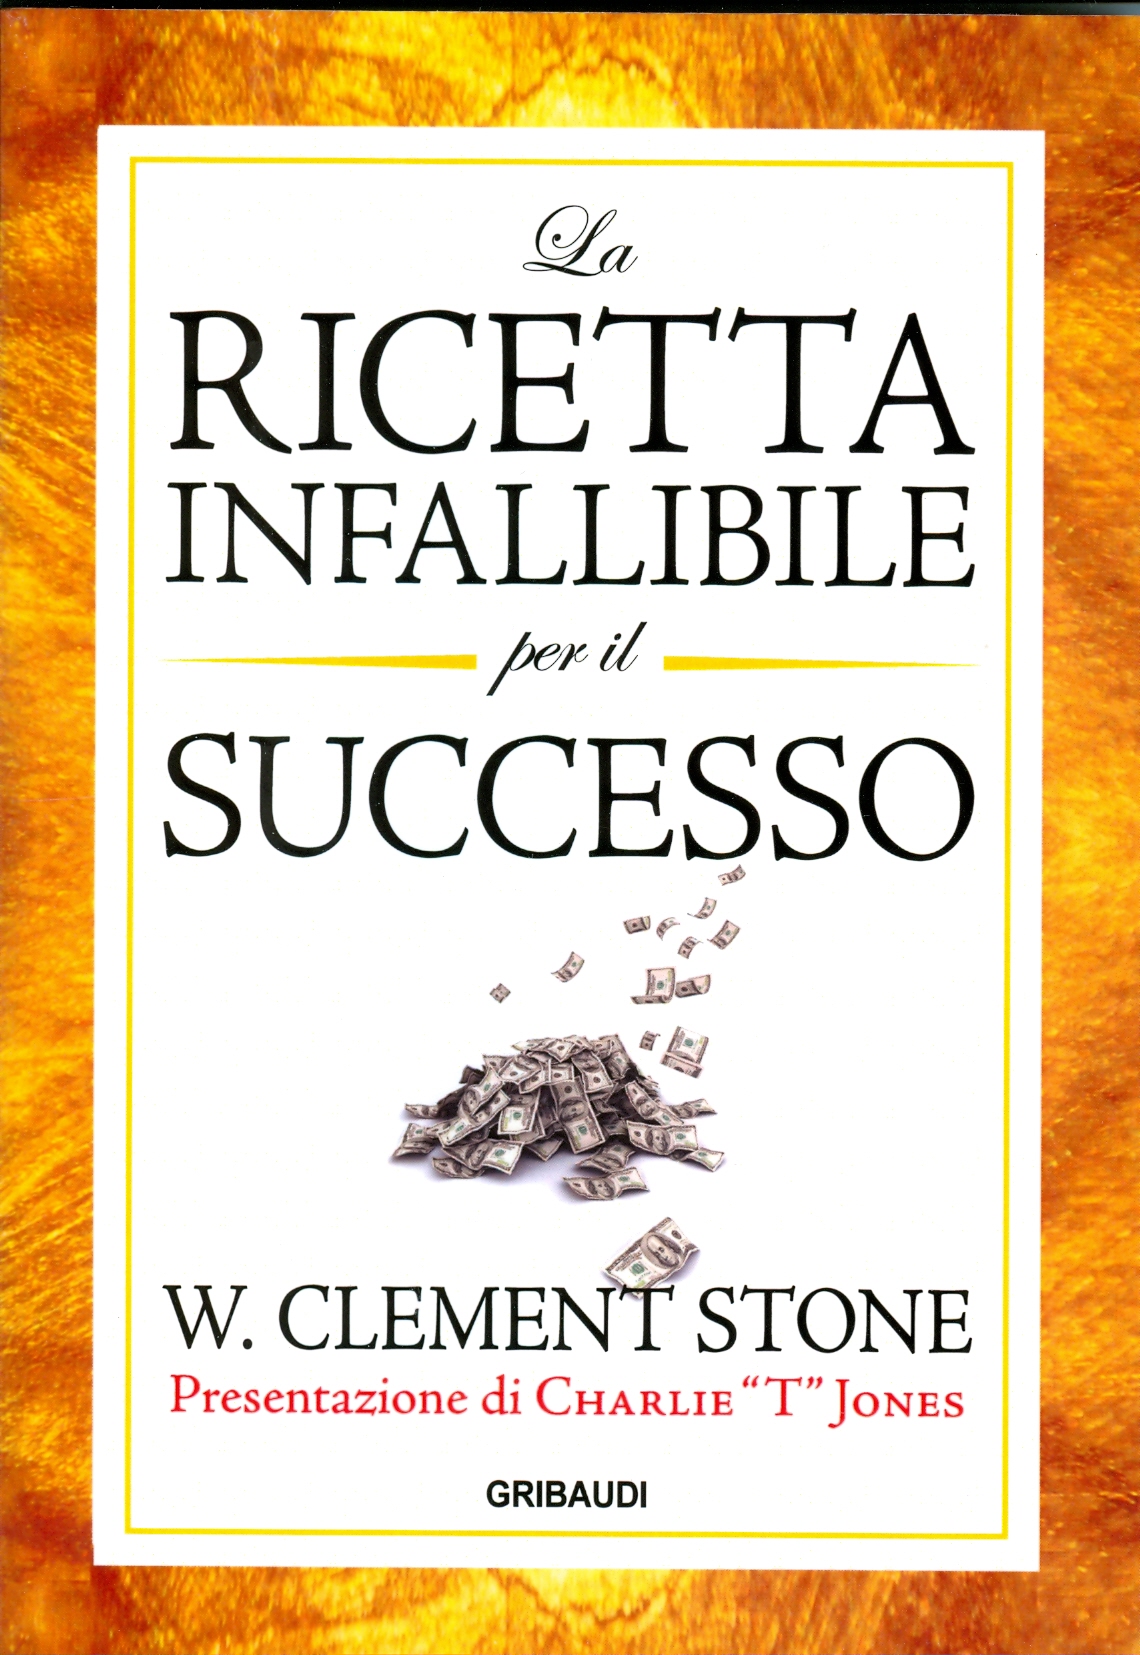 W. Clement Stone - La ricetta infallibile per il successo - Clicca l'immagine per chiudere